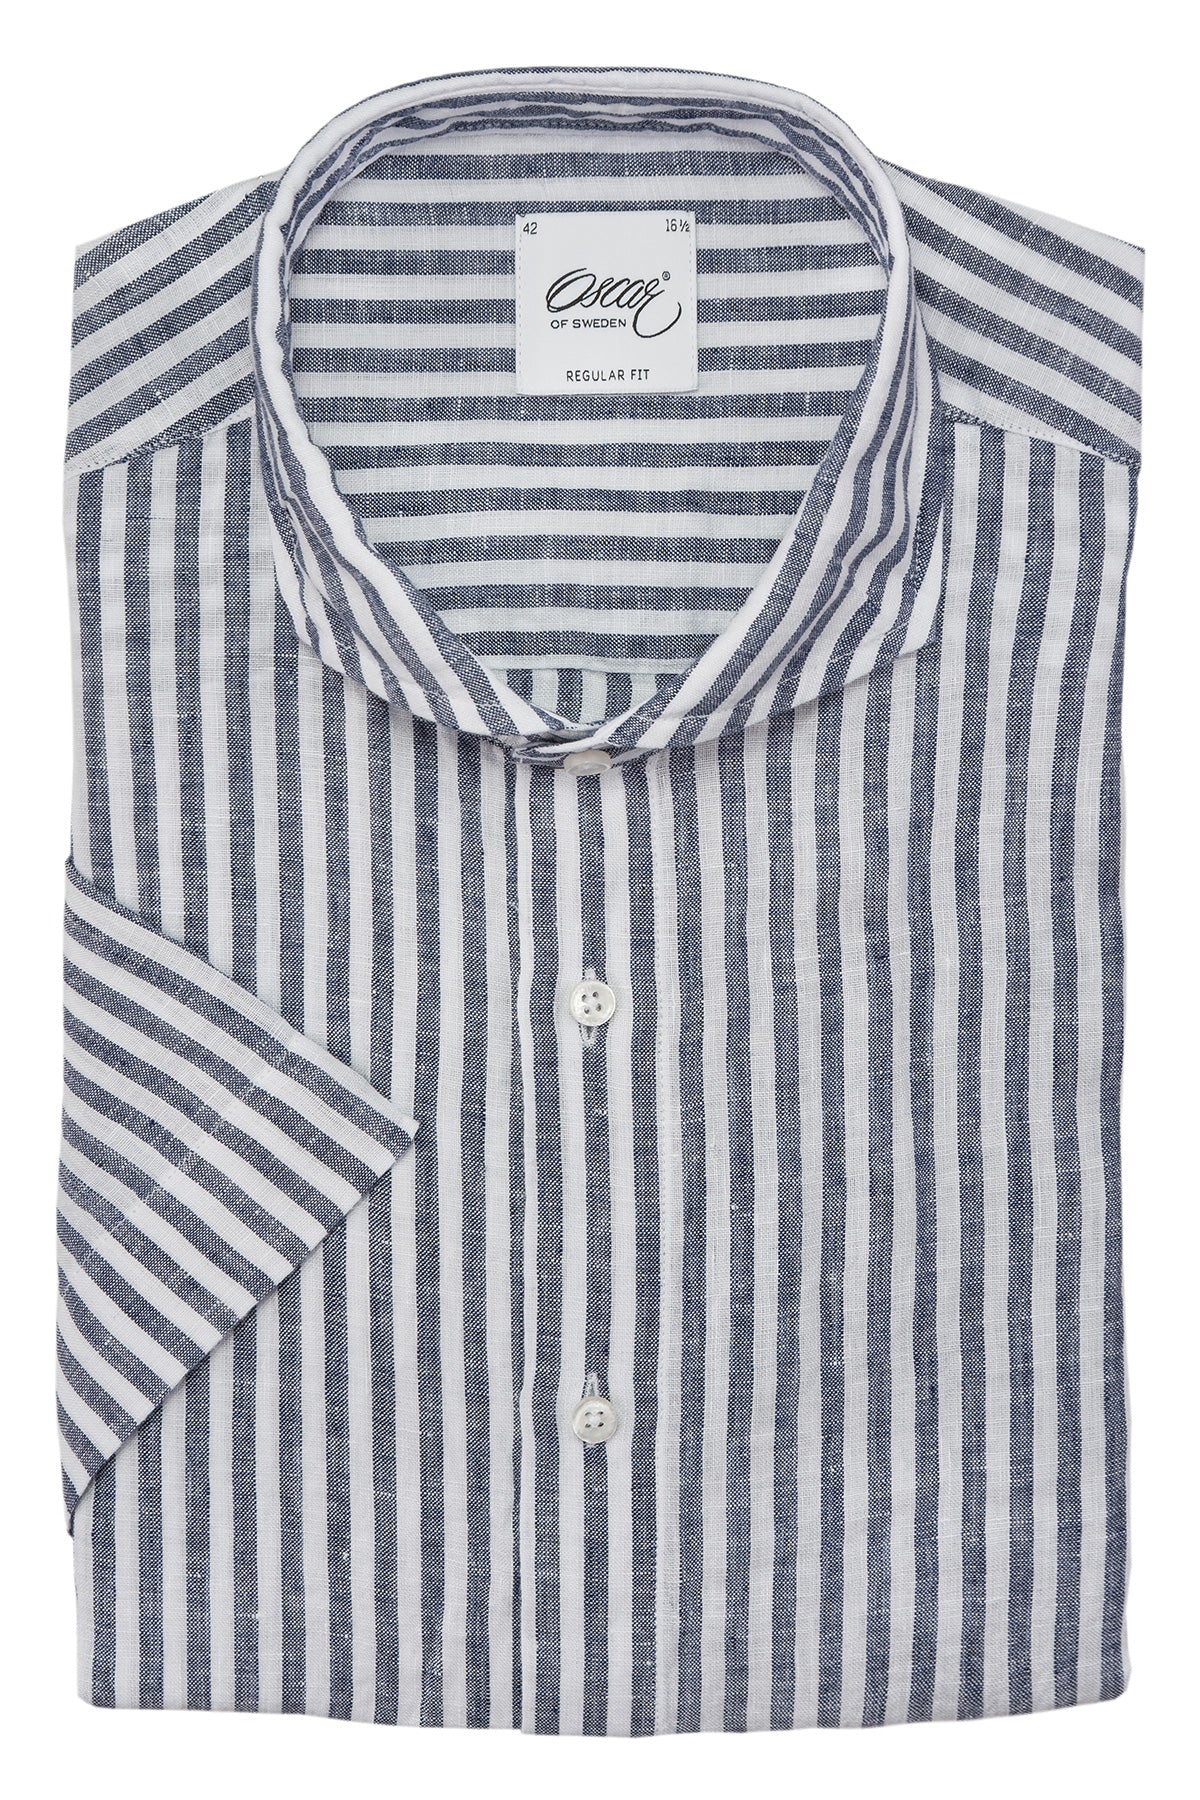 Blue striped linen short sleeve regular fit shirt